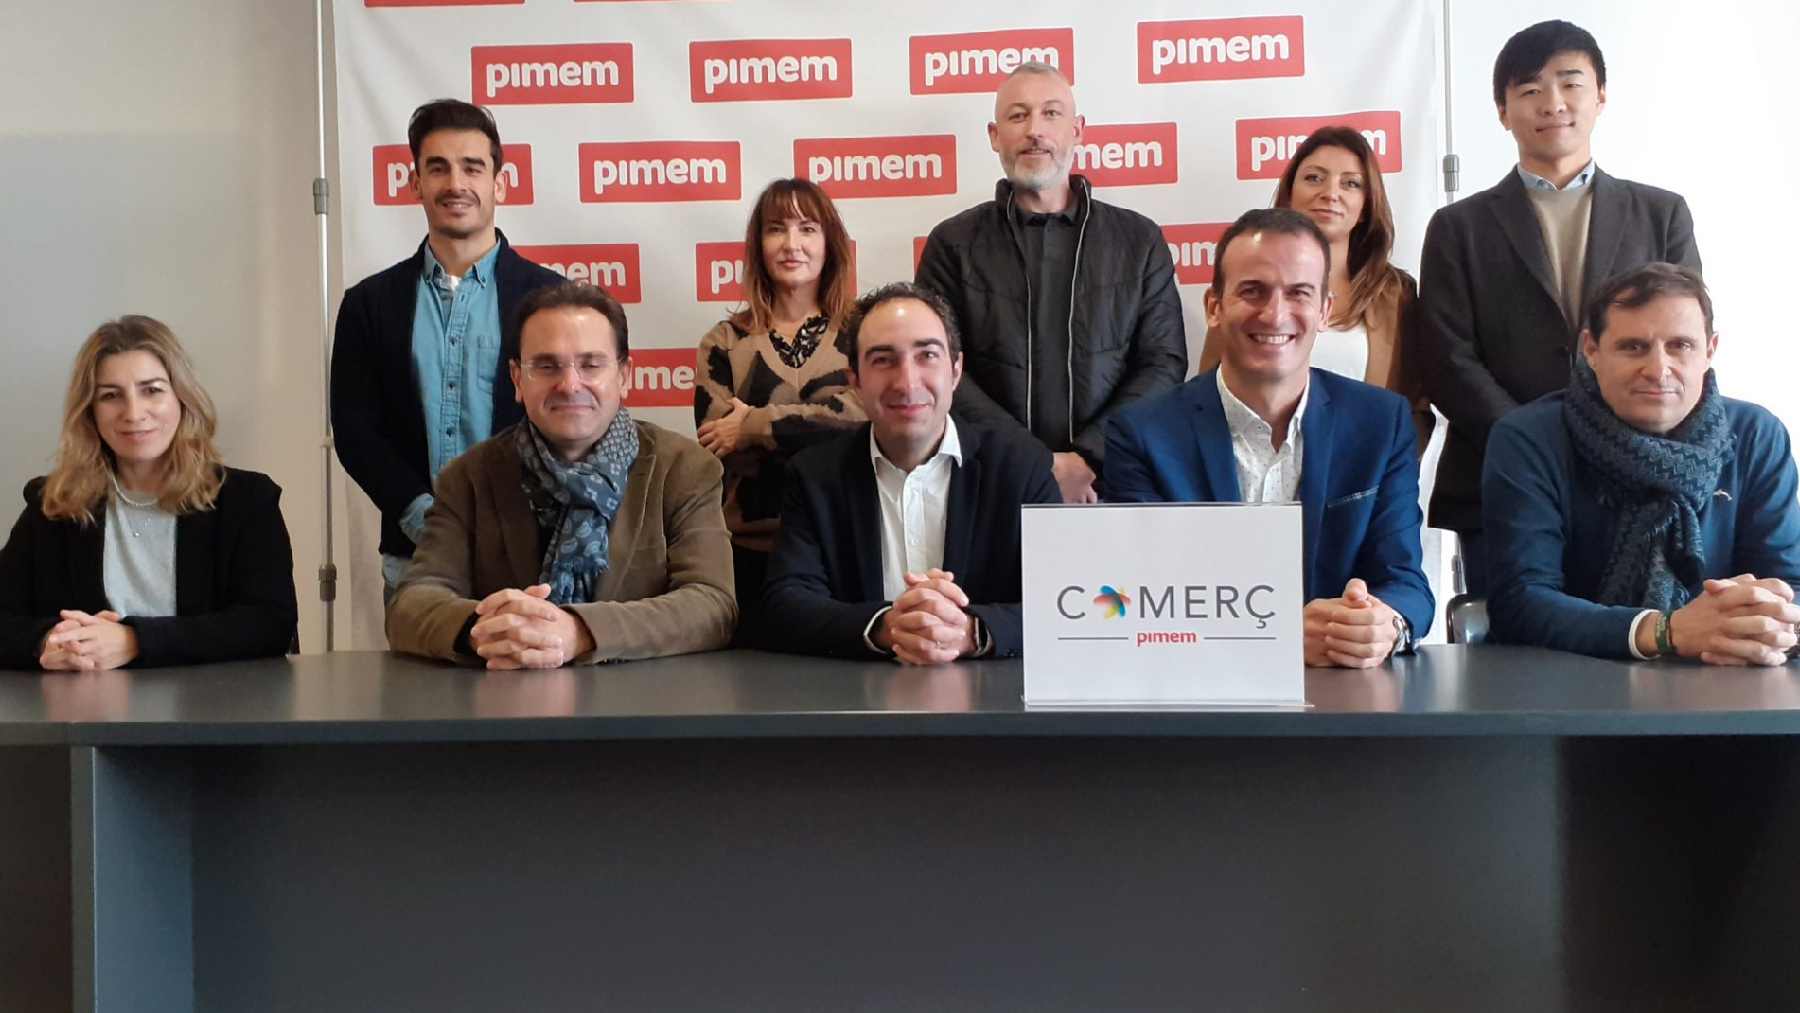 Junta de Pimem-Comerç en su presentación. Foto: Pimem.